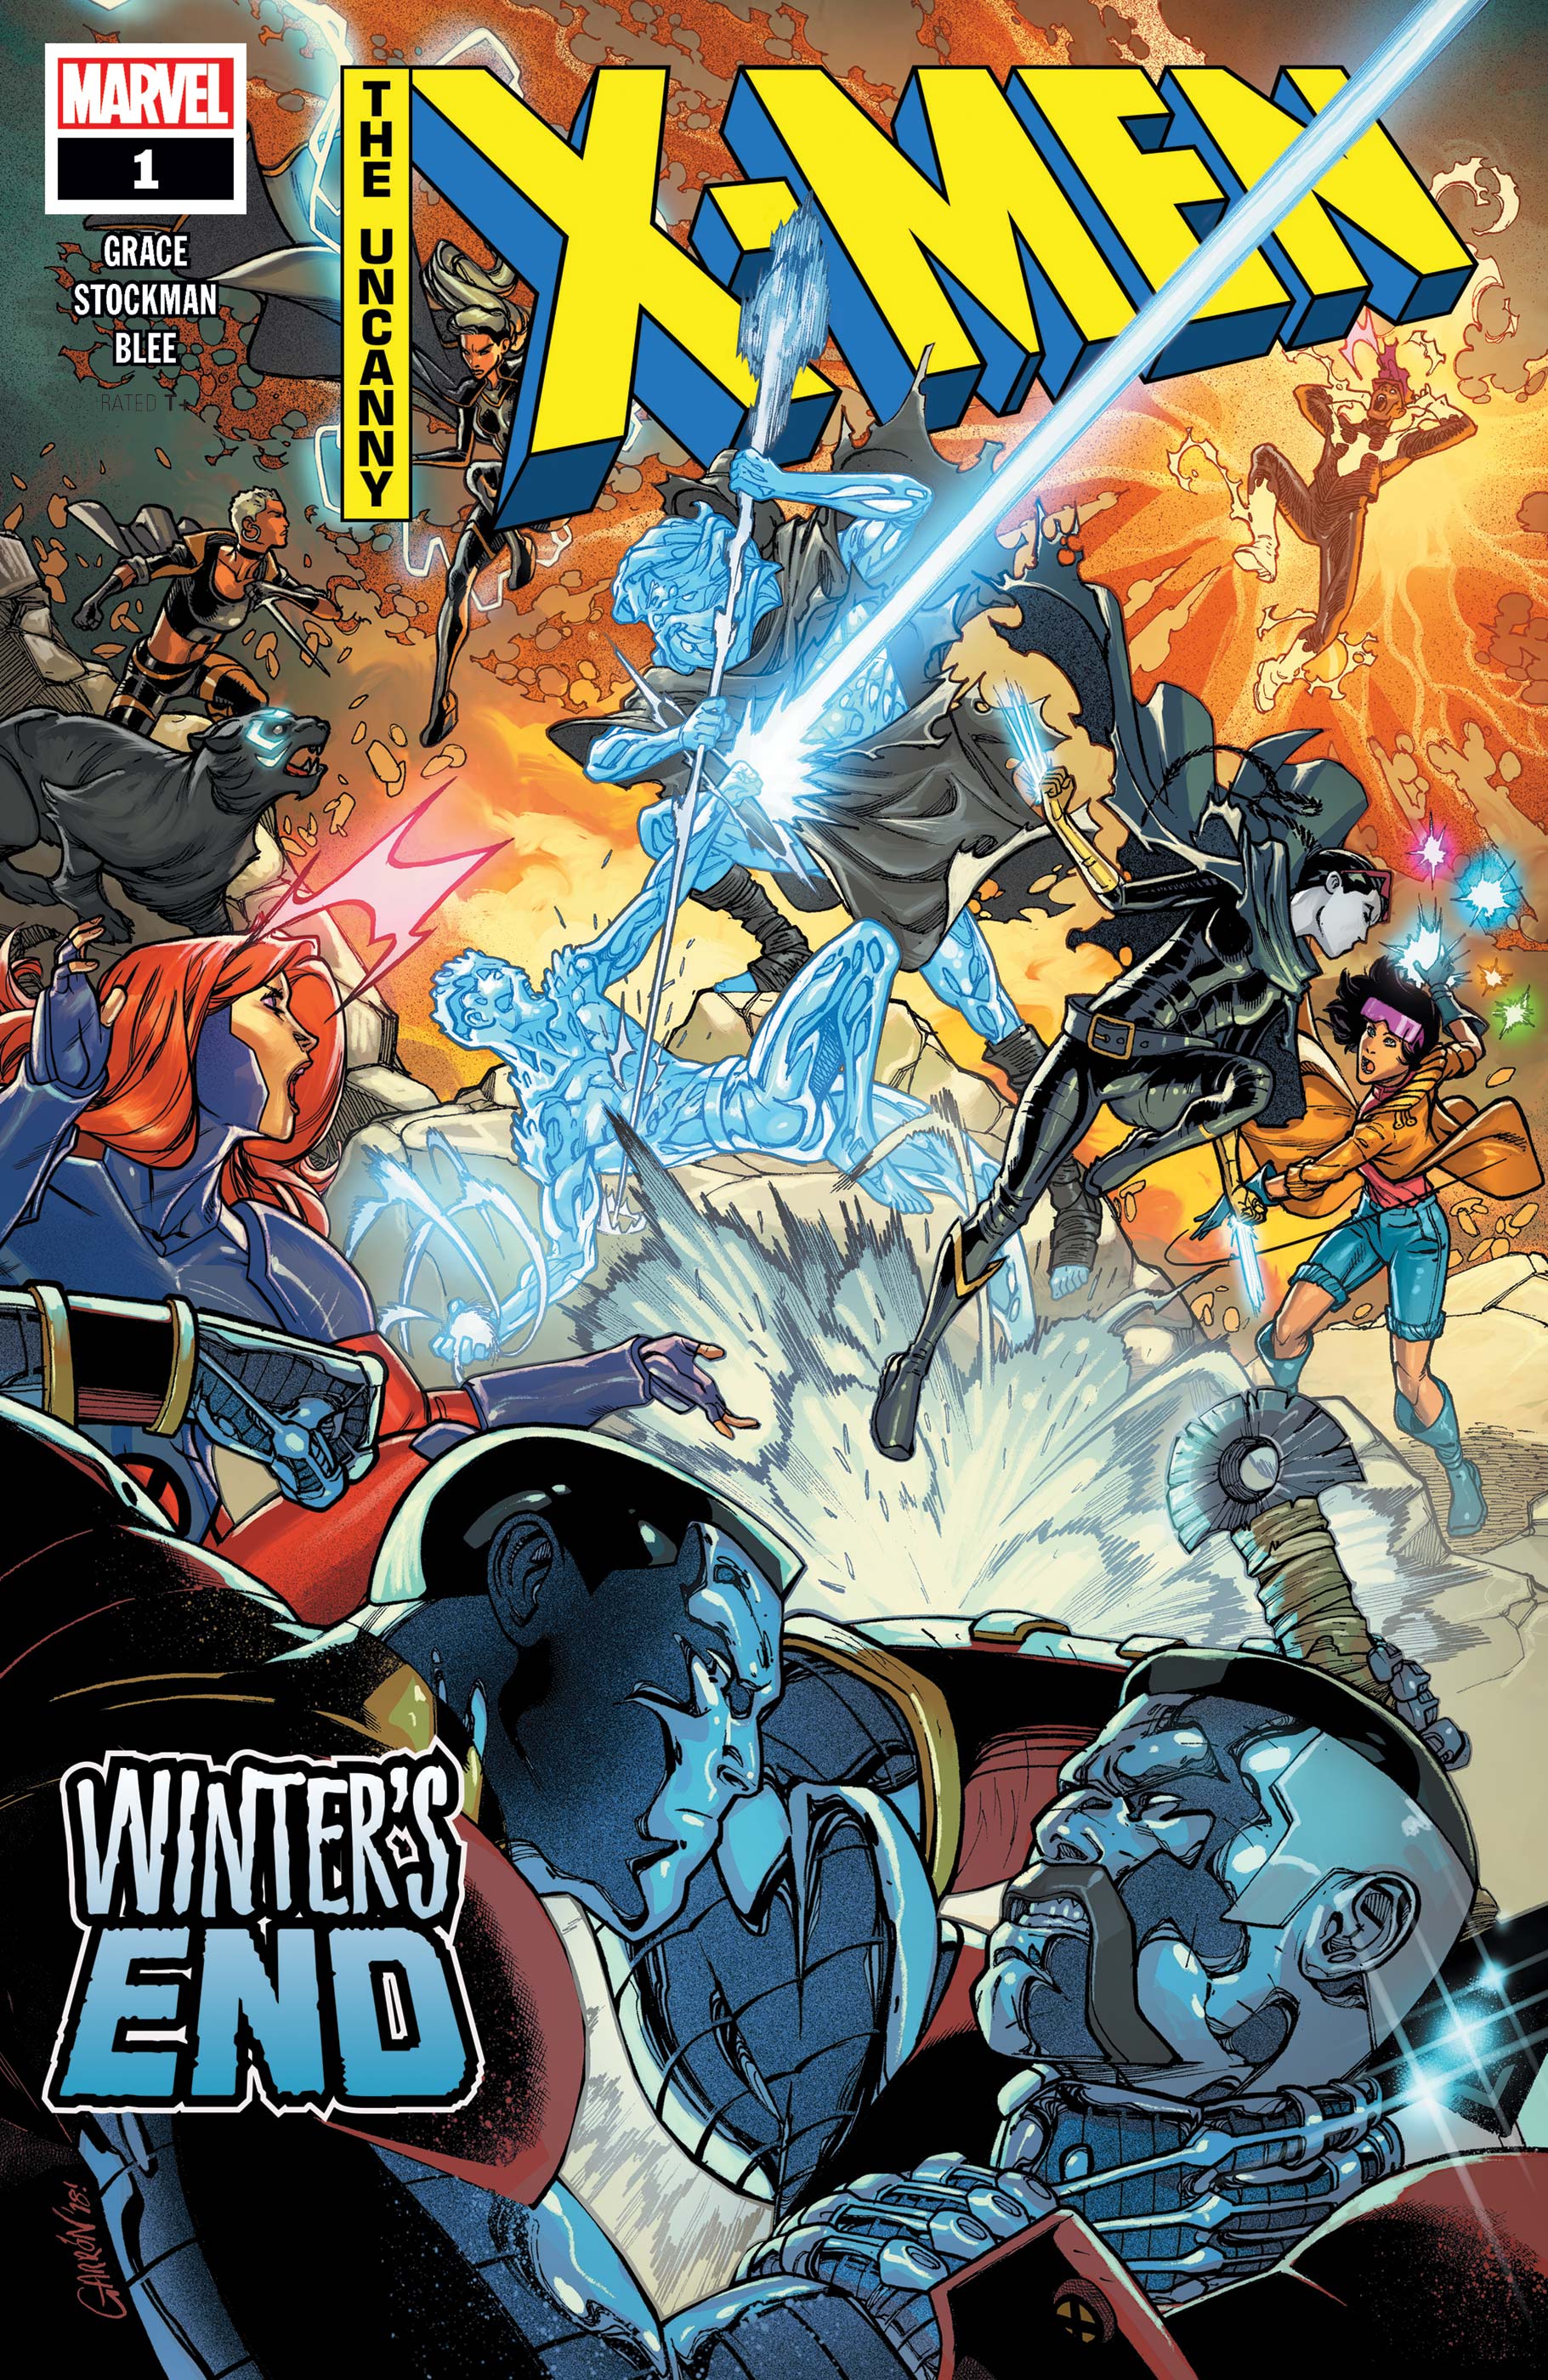 Uncanny X-Men: Winter's End (2019) #1